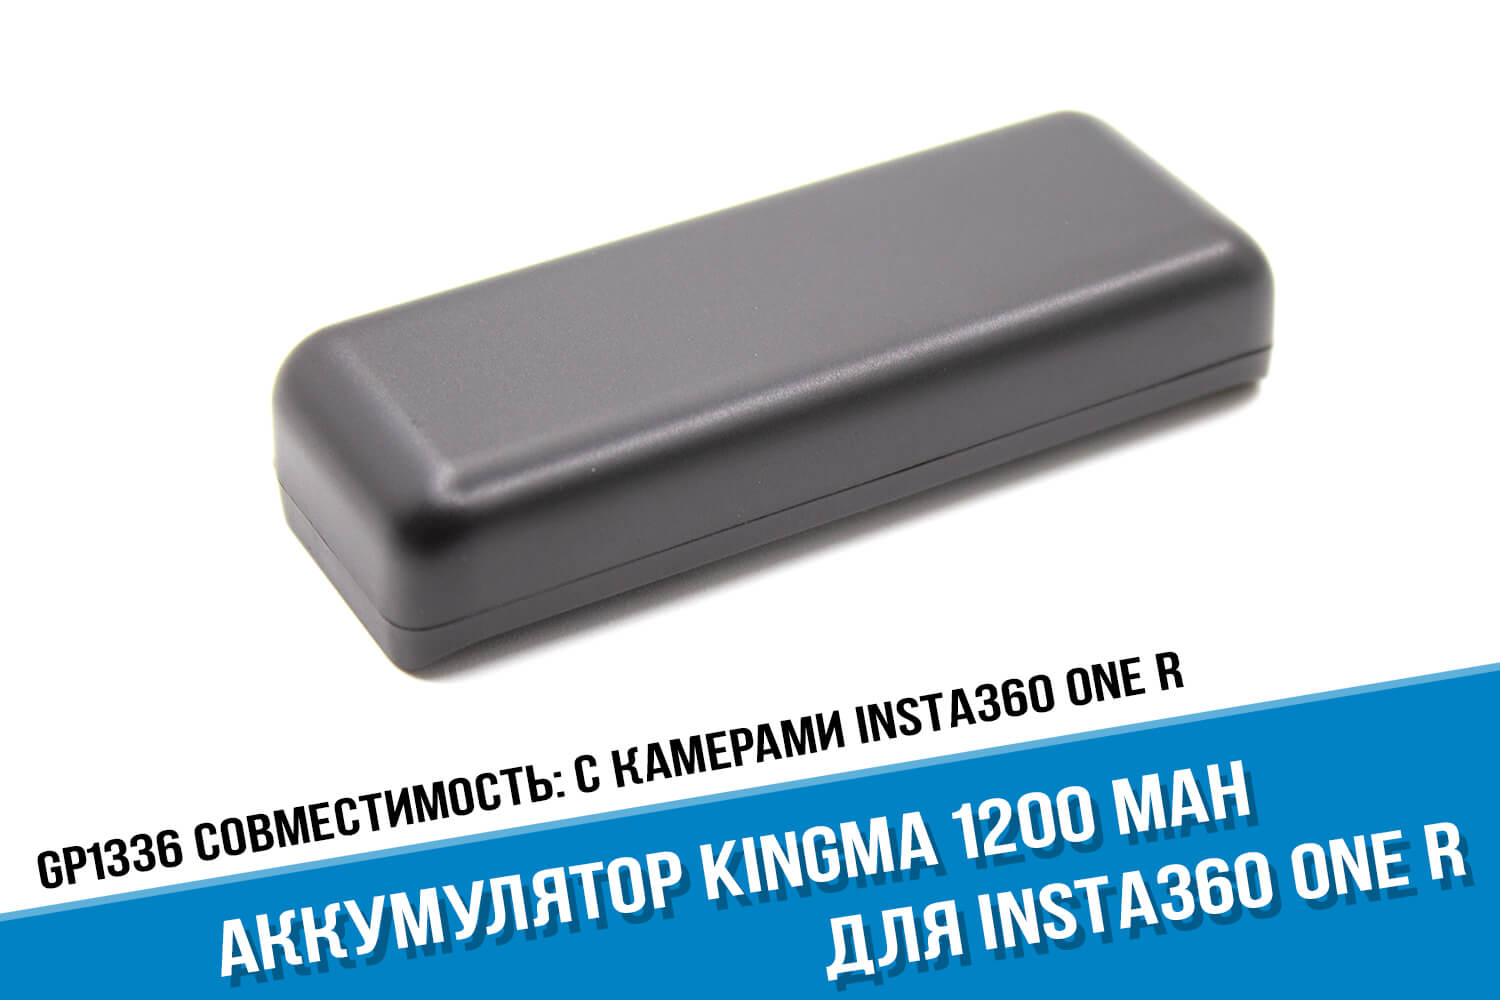 Аккумулятор Insta360 One R фирмы Kingma